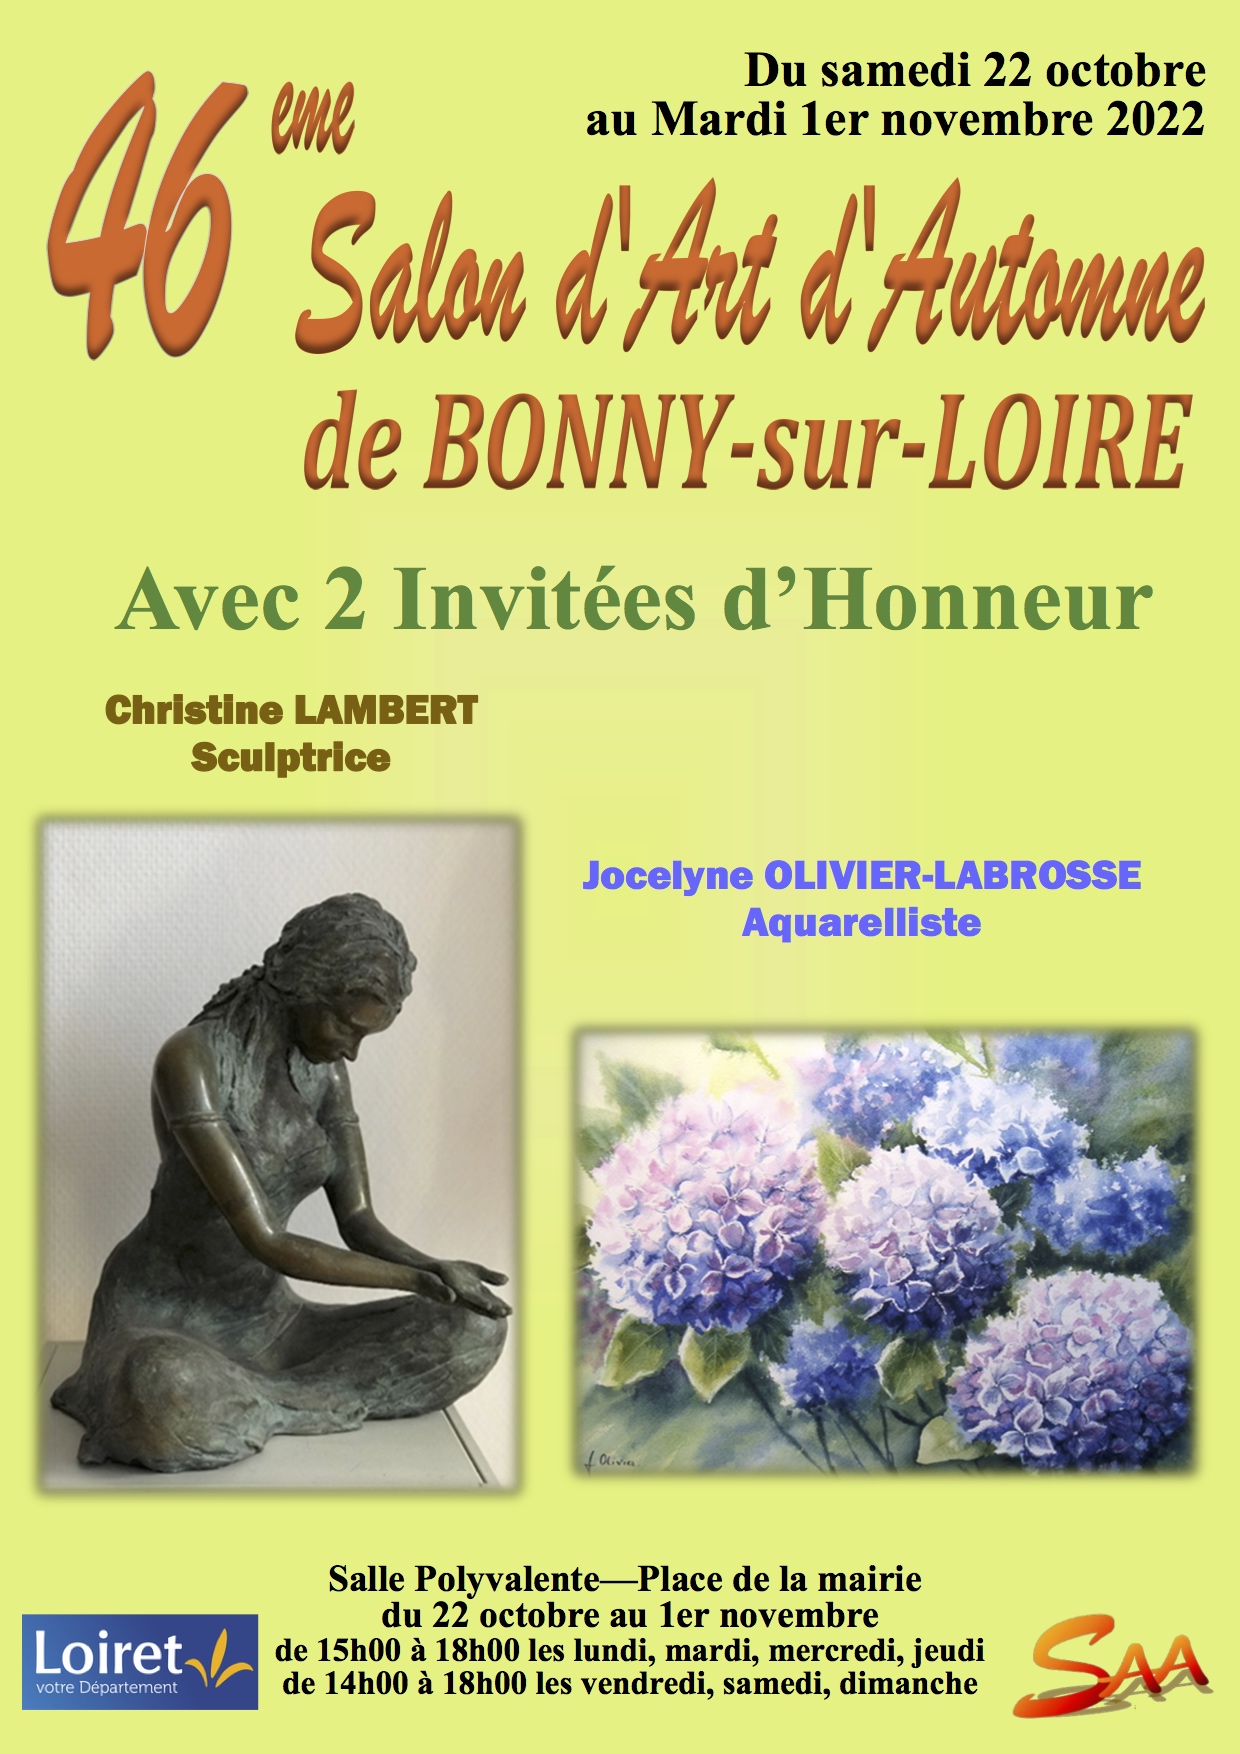 46ème Salon d'Art d'Automne de Bonny-sur-Loire